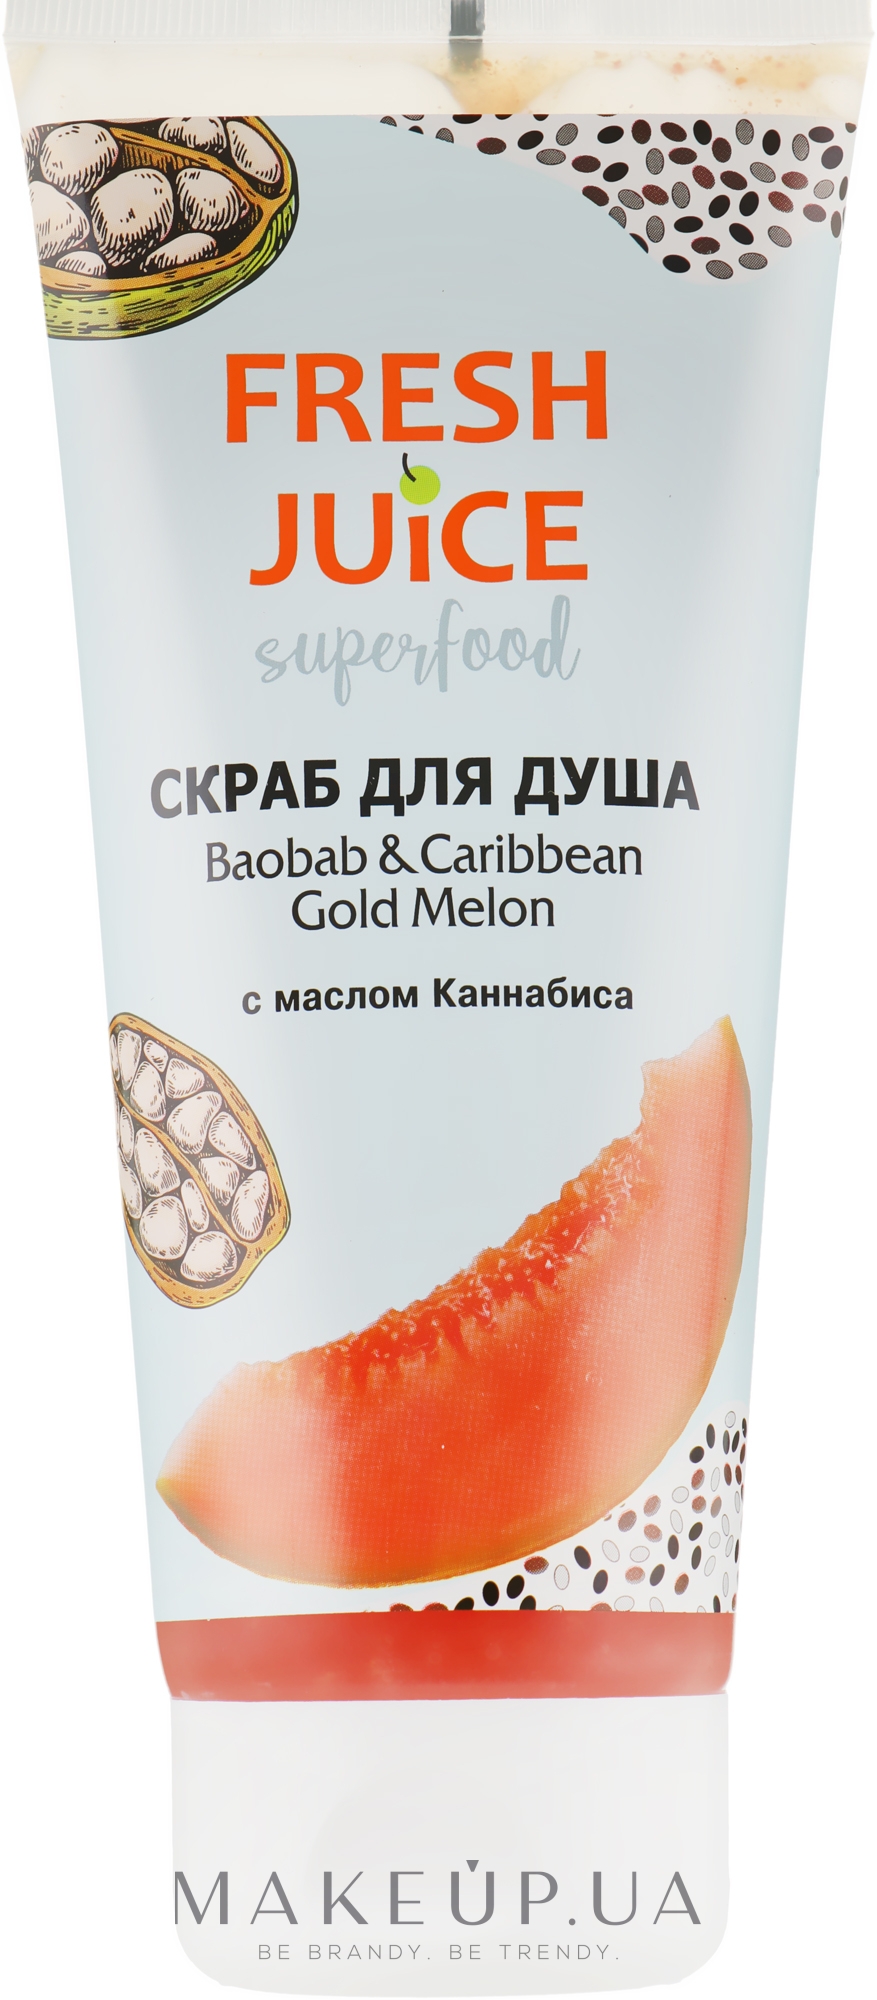 Скраб для душа "Баобаб и Карибская золотая дыня" - Fresh Juice Superfood Baobab & Caribbean Gold Melon  — фото 200ml